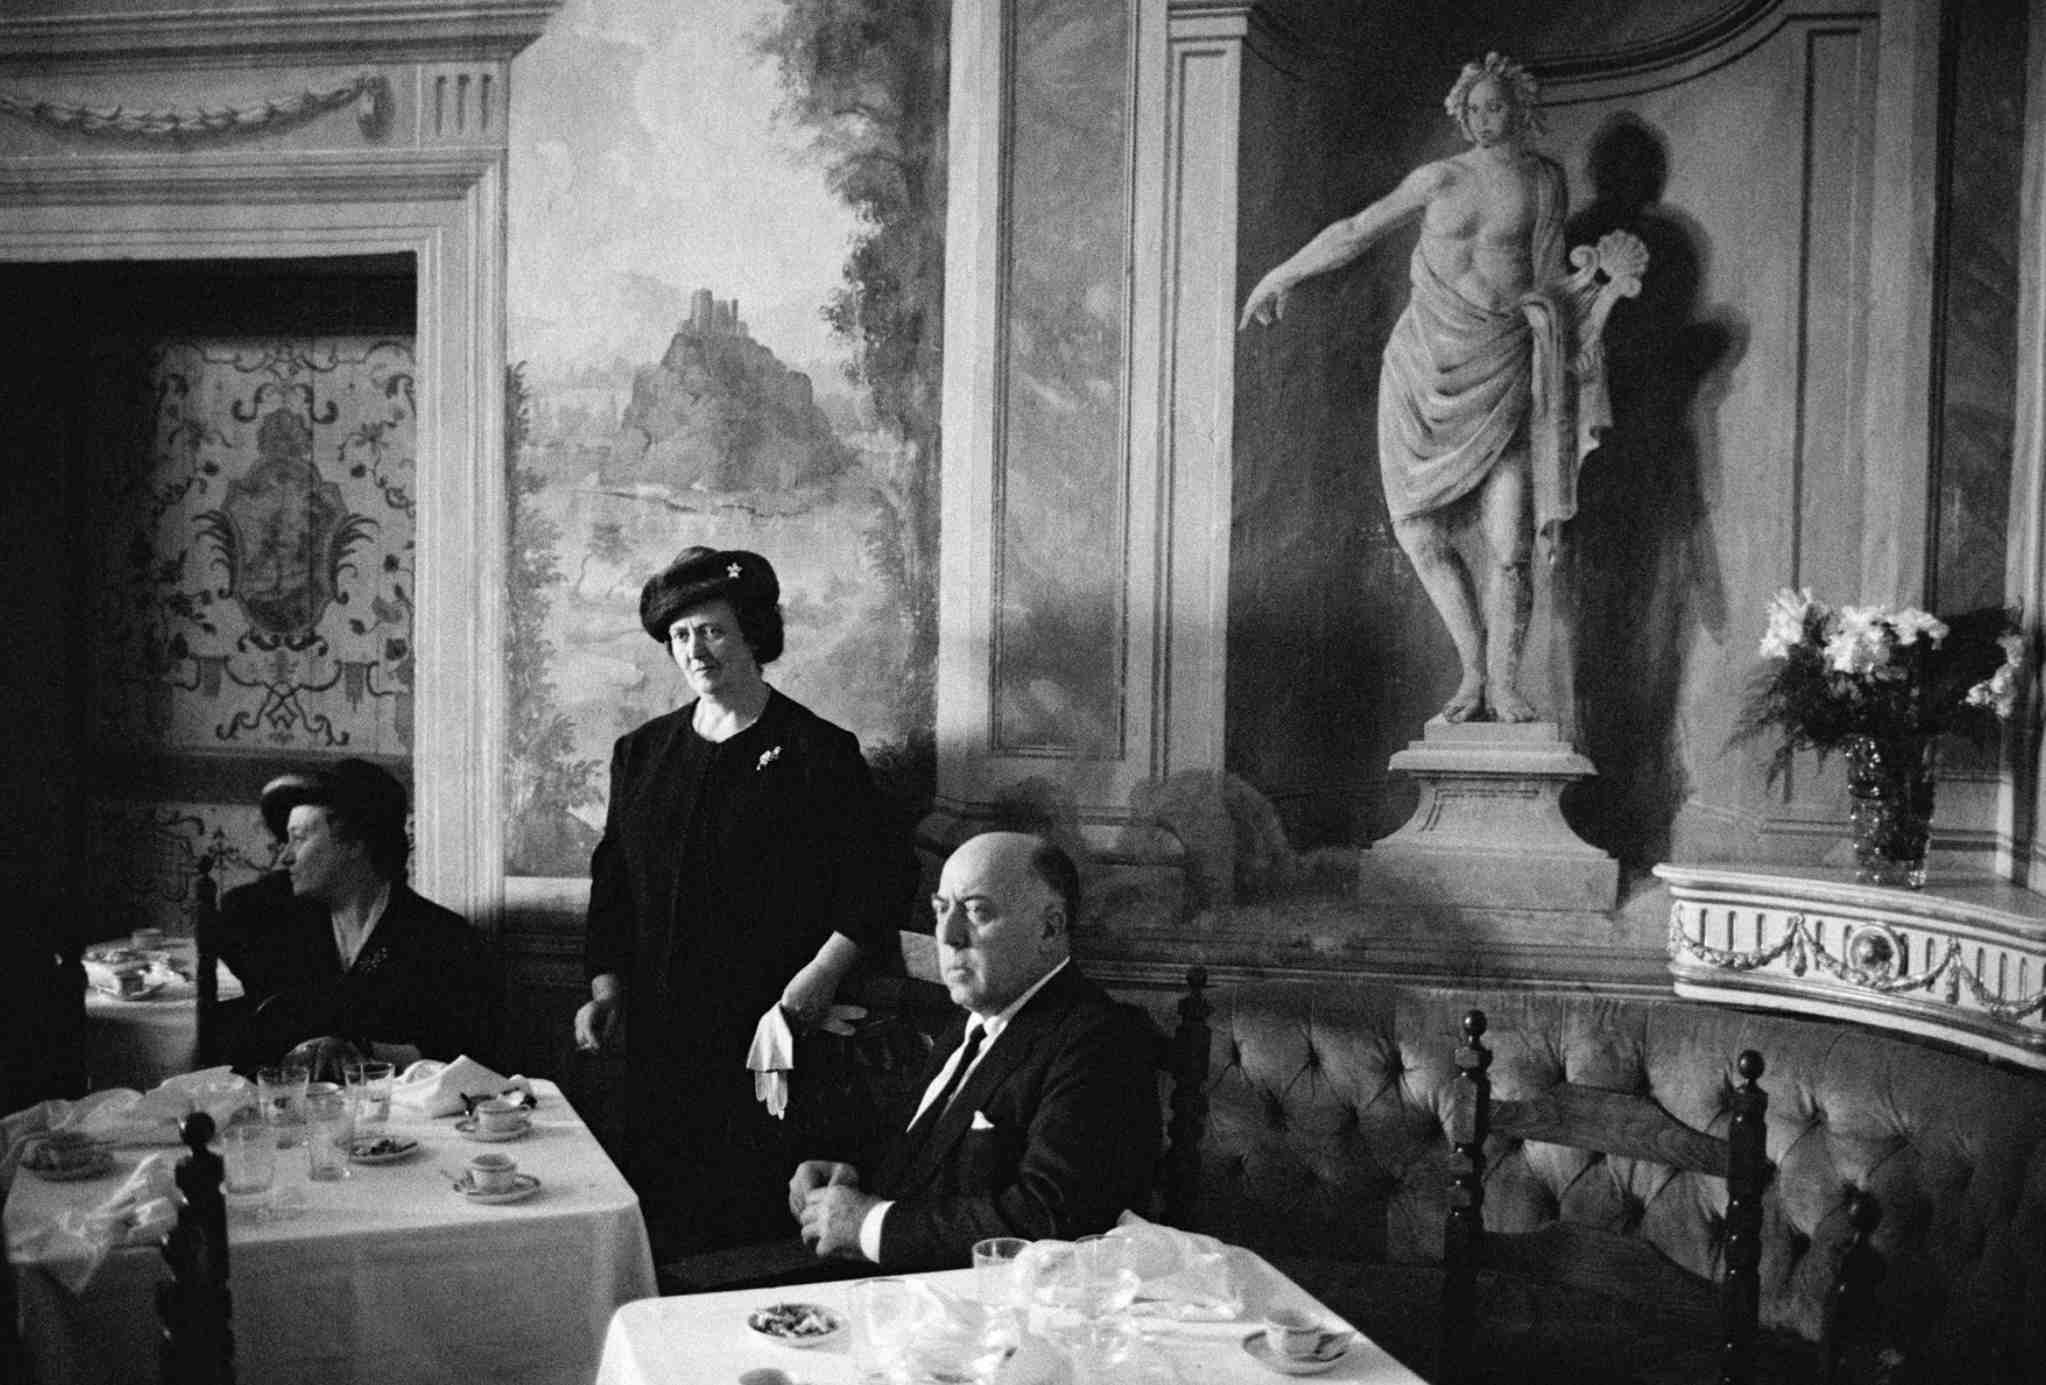 La italia de la posguerra a través de la fotografía de Bruno Barbey